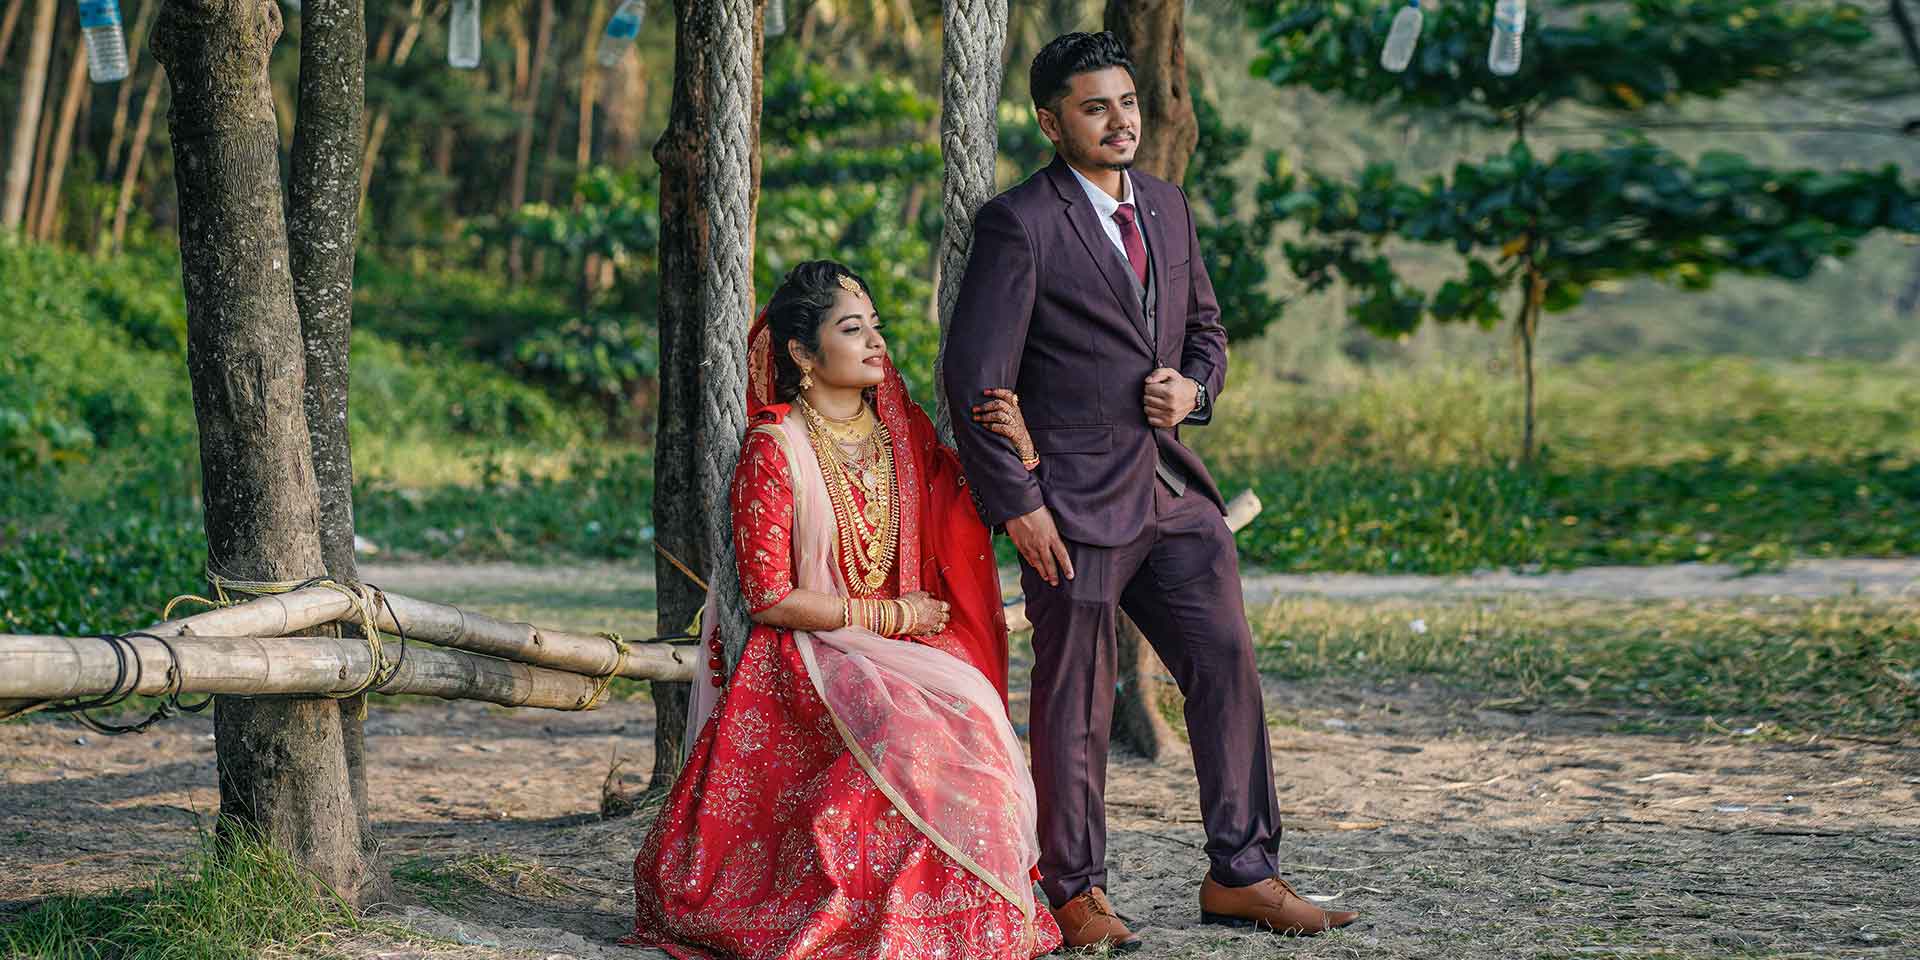 Fuchsia and Orange Wedding in India | Junebug Weddings | Indian wedding  photography couples, Indian wedding photography poses, Wedding photography  india